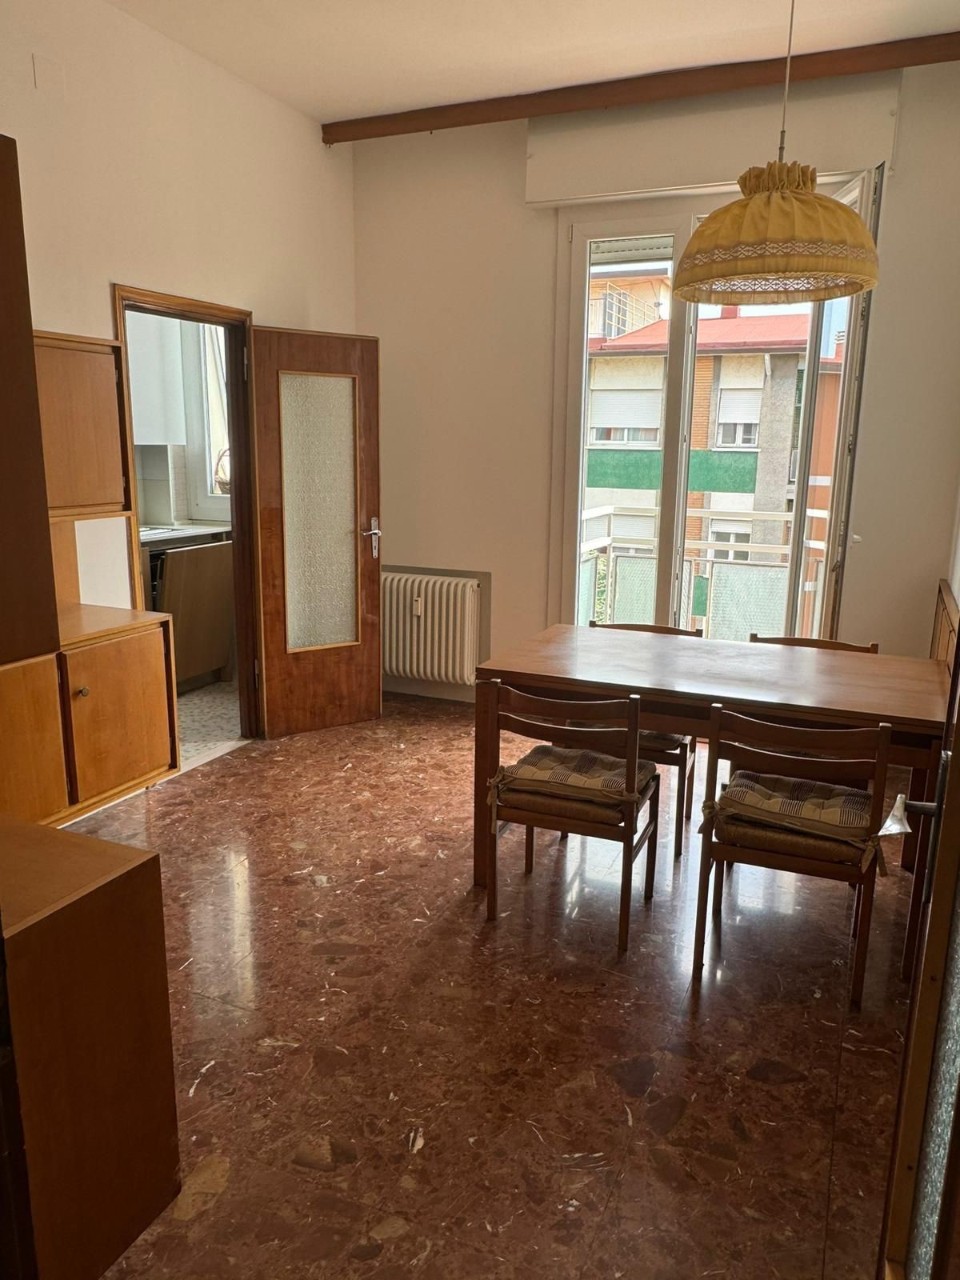 Affitto - Appartamento - Lunetta Gamberini - Bologna - € 1.600